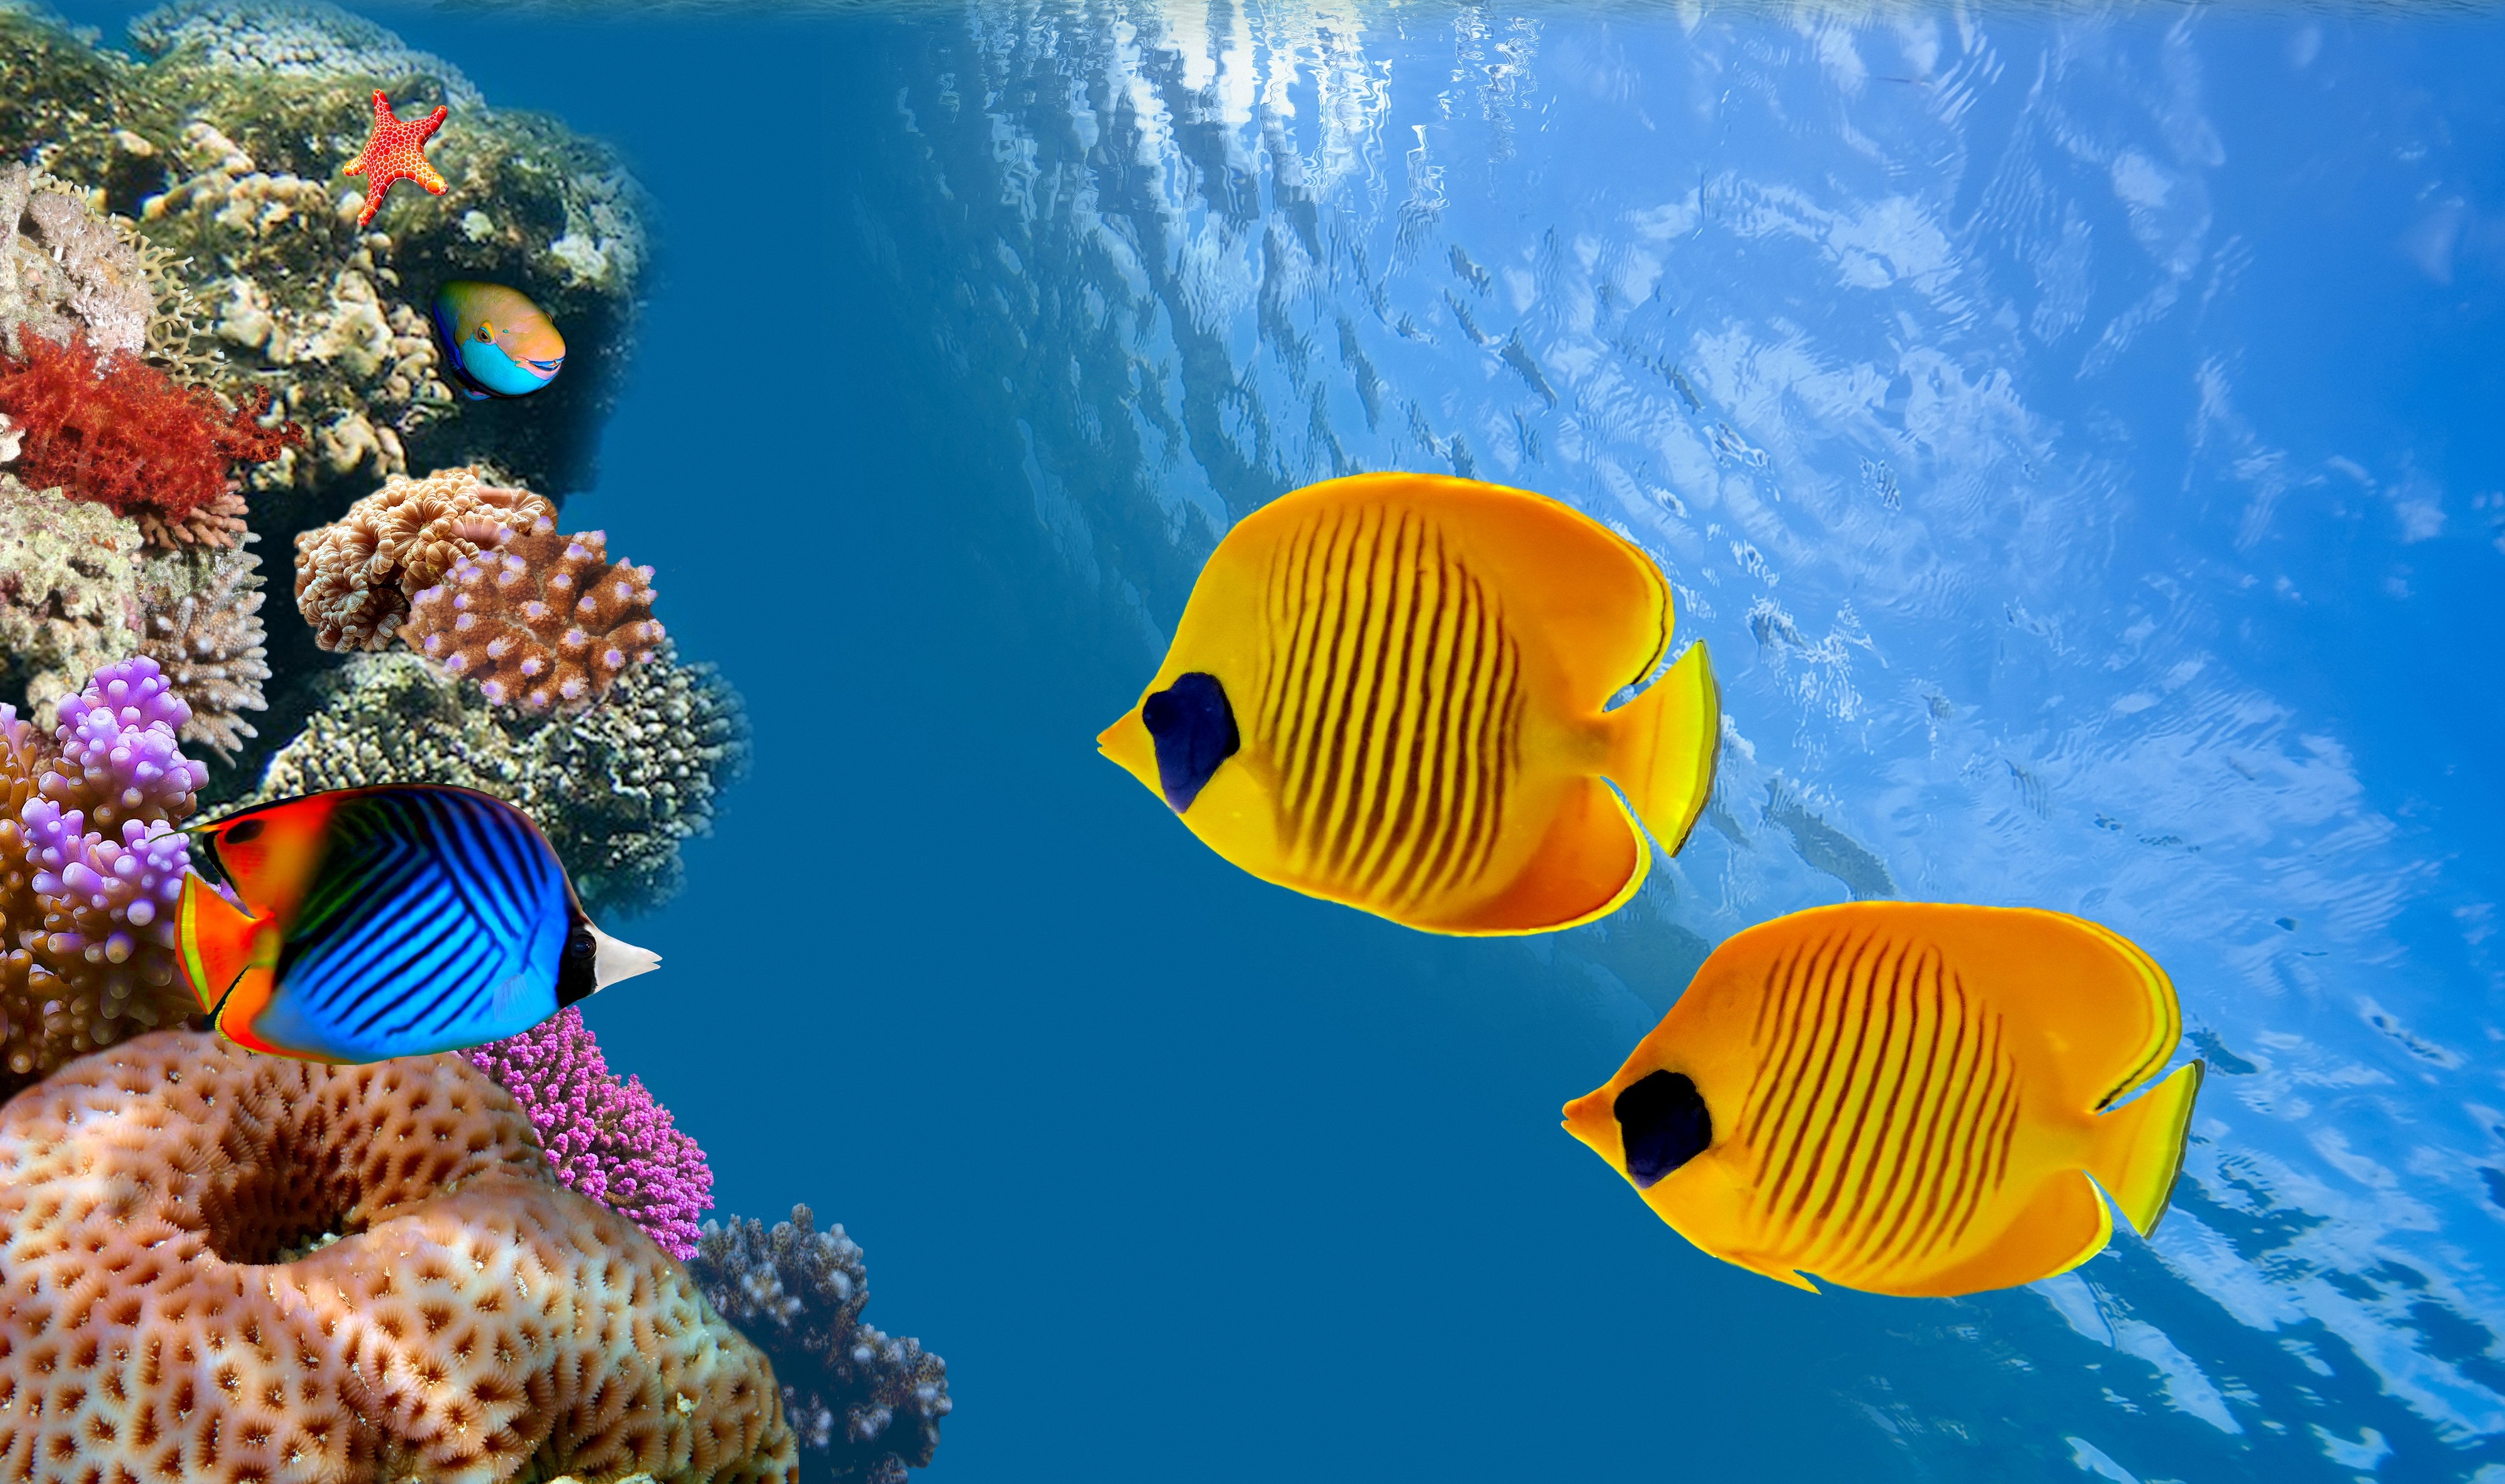 unterwasser hd wallpaper,fisch,korallenrifffische,unter wasser,meeresbiologie,korallenriff